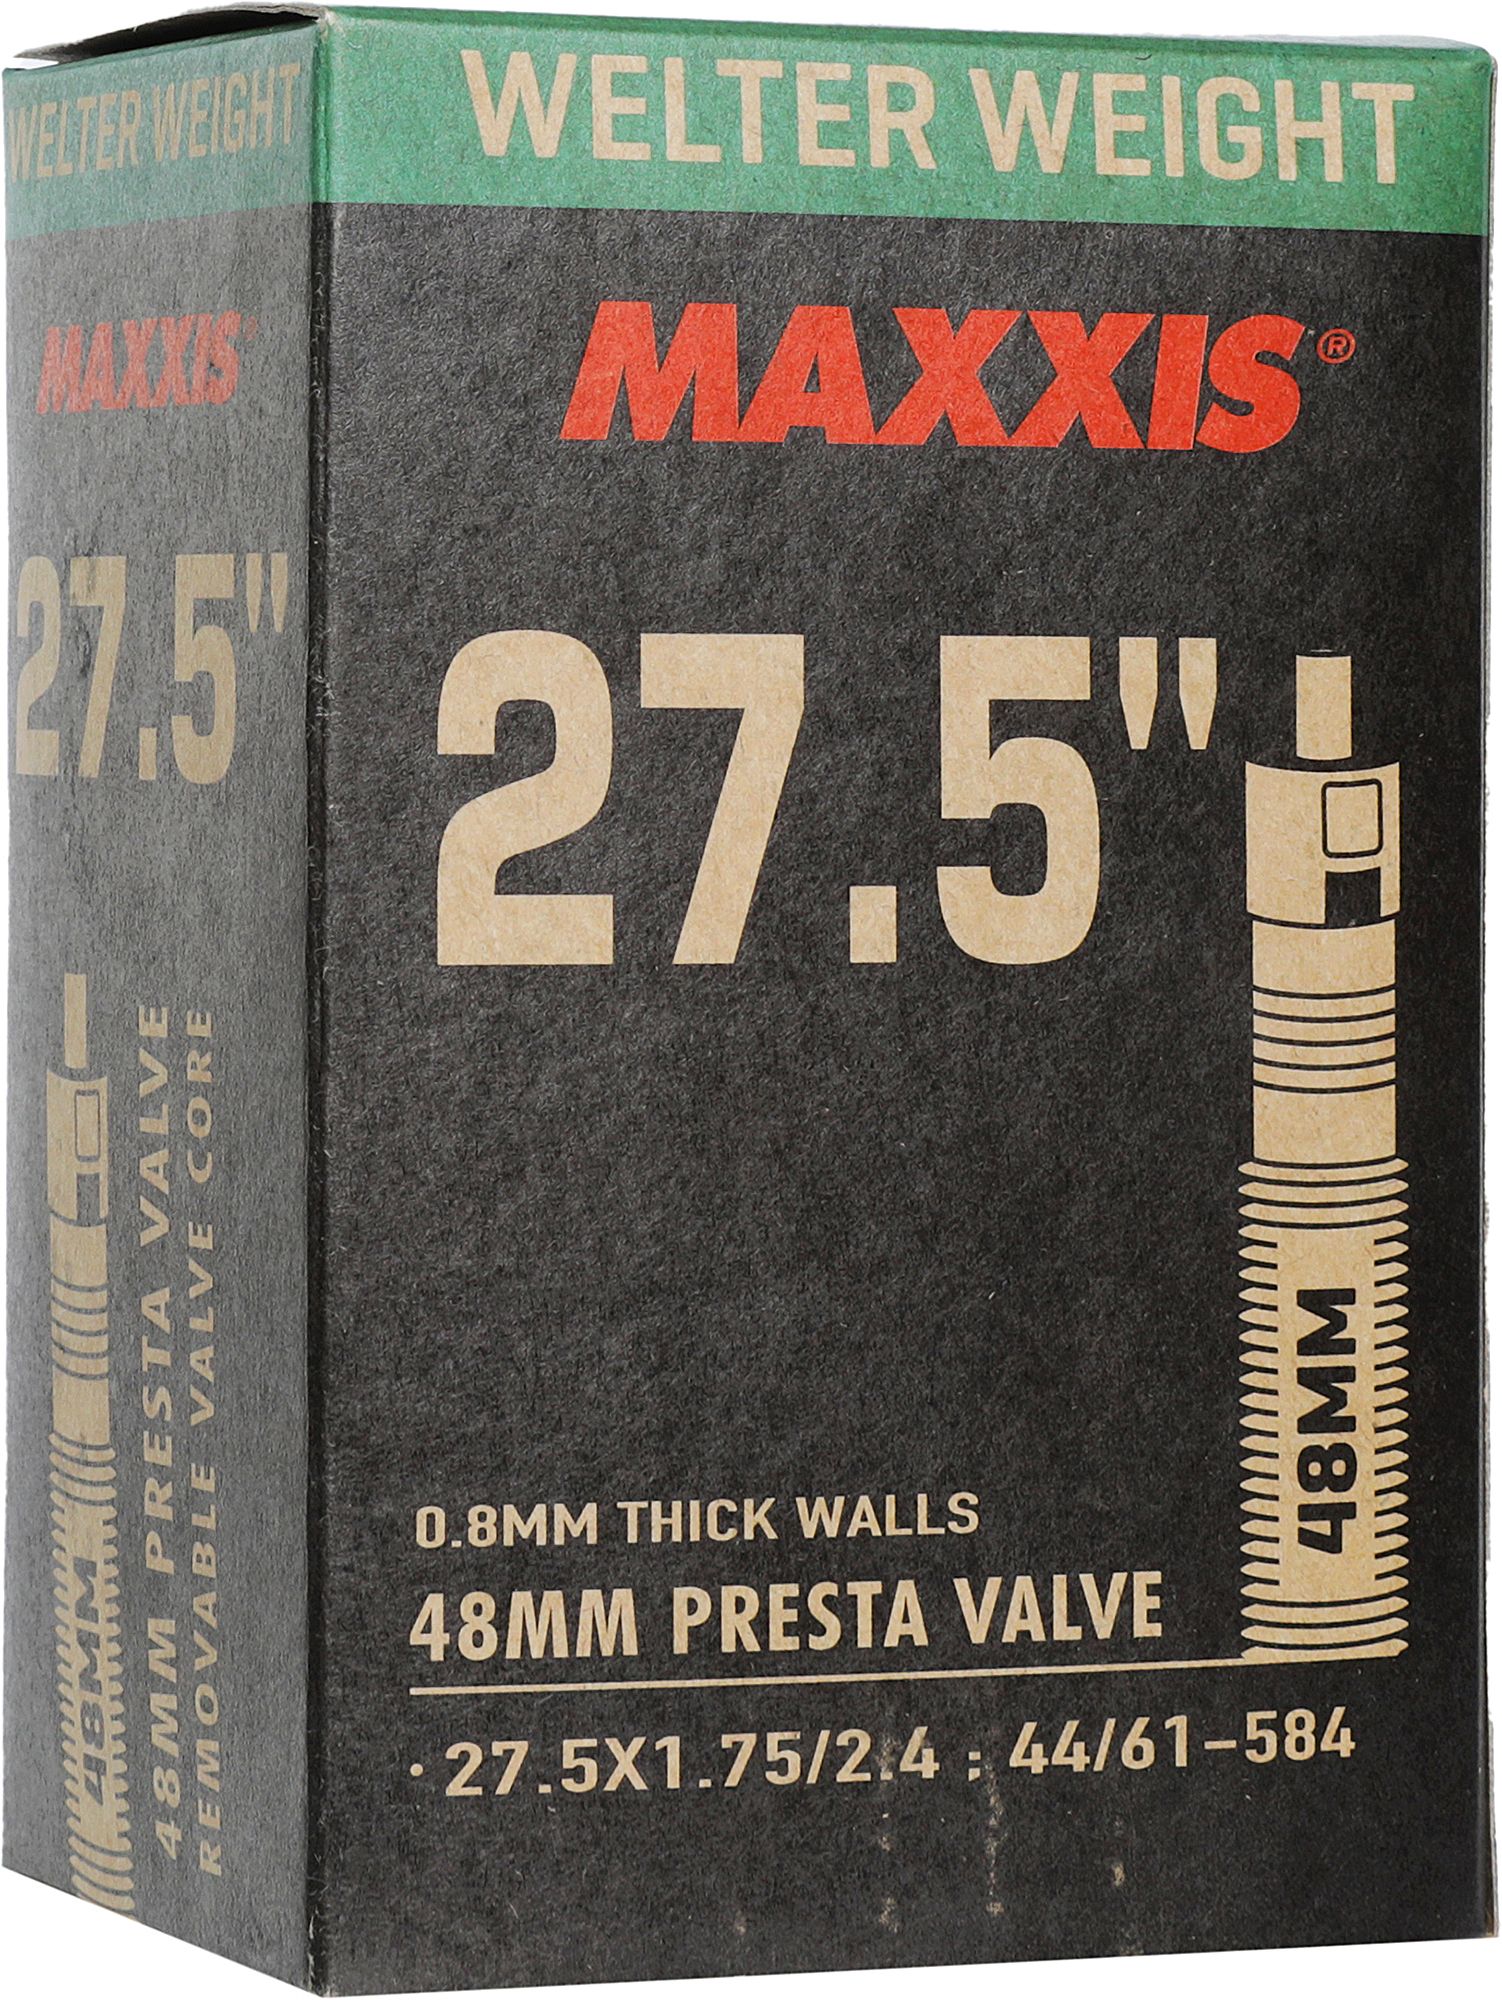 Камера MAXXIS 27,5х1.75/2.40 Welter weight LFVSEP вело ниппель 48 0,8 мм EIB00139800